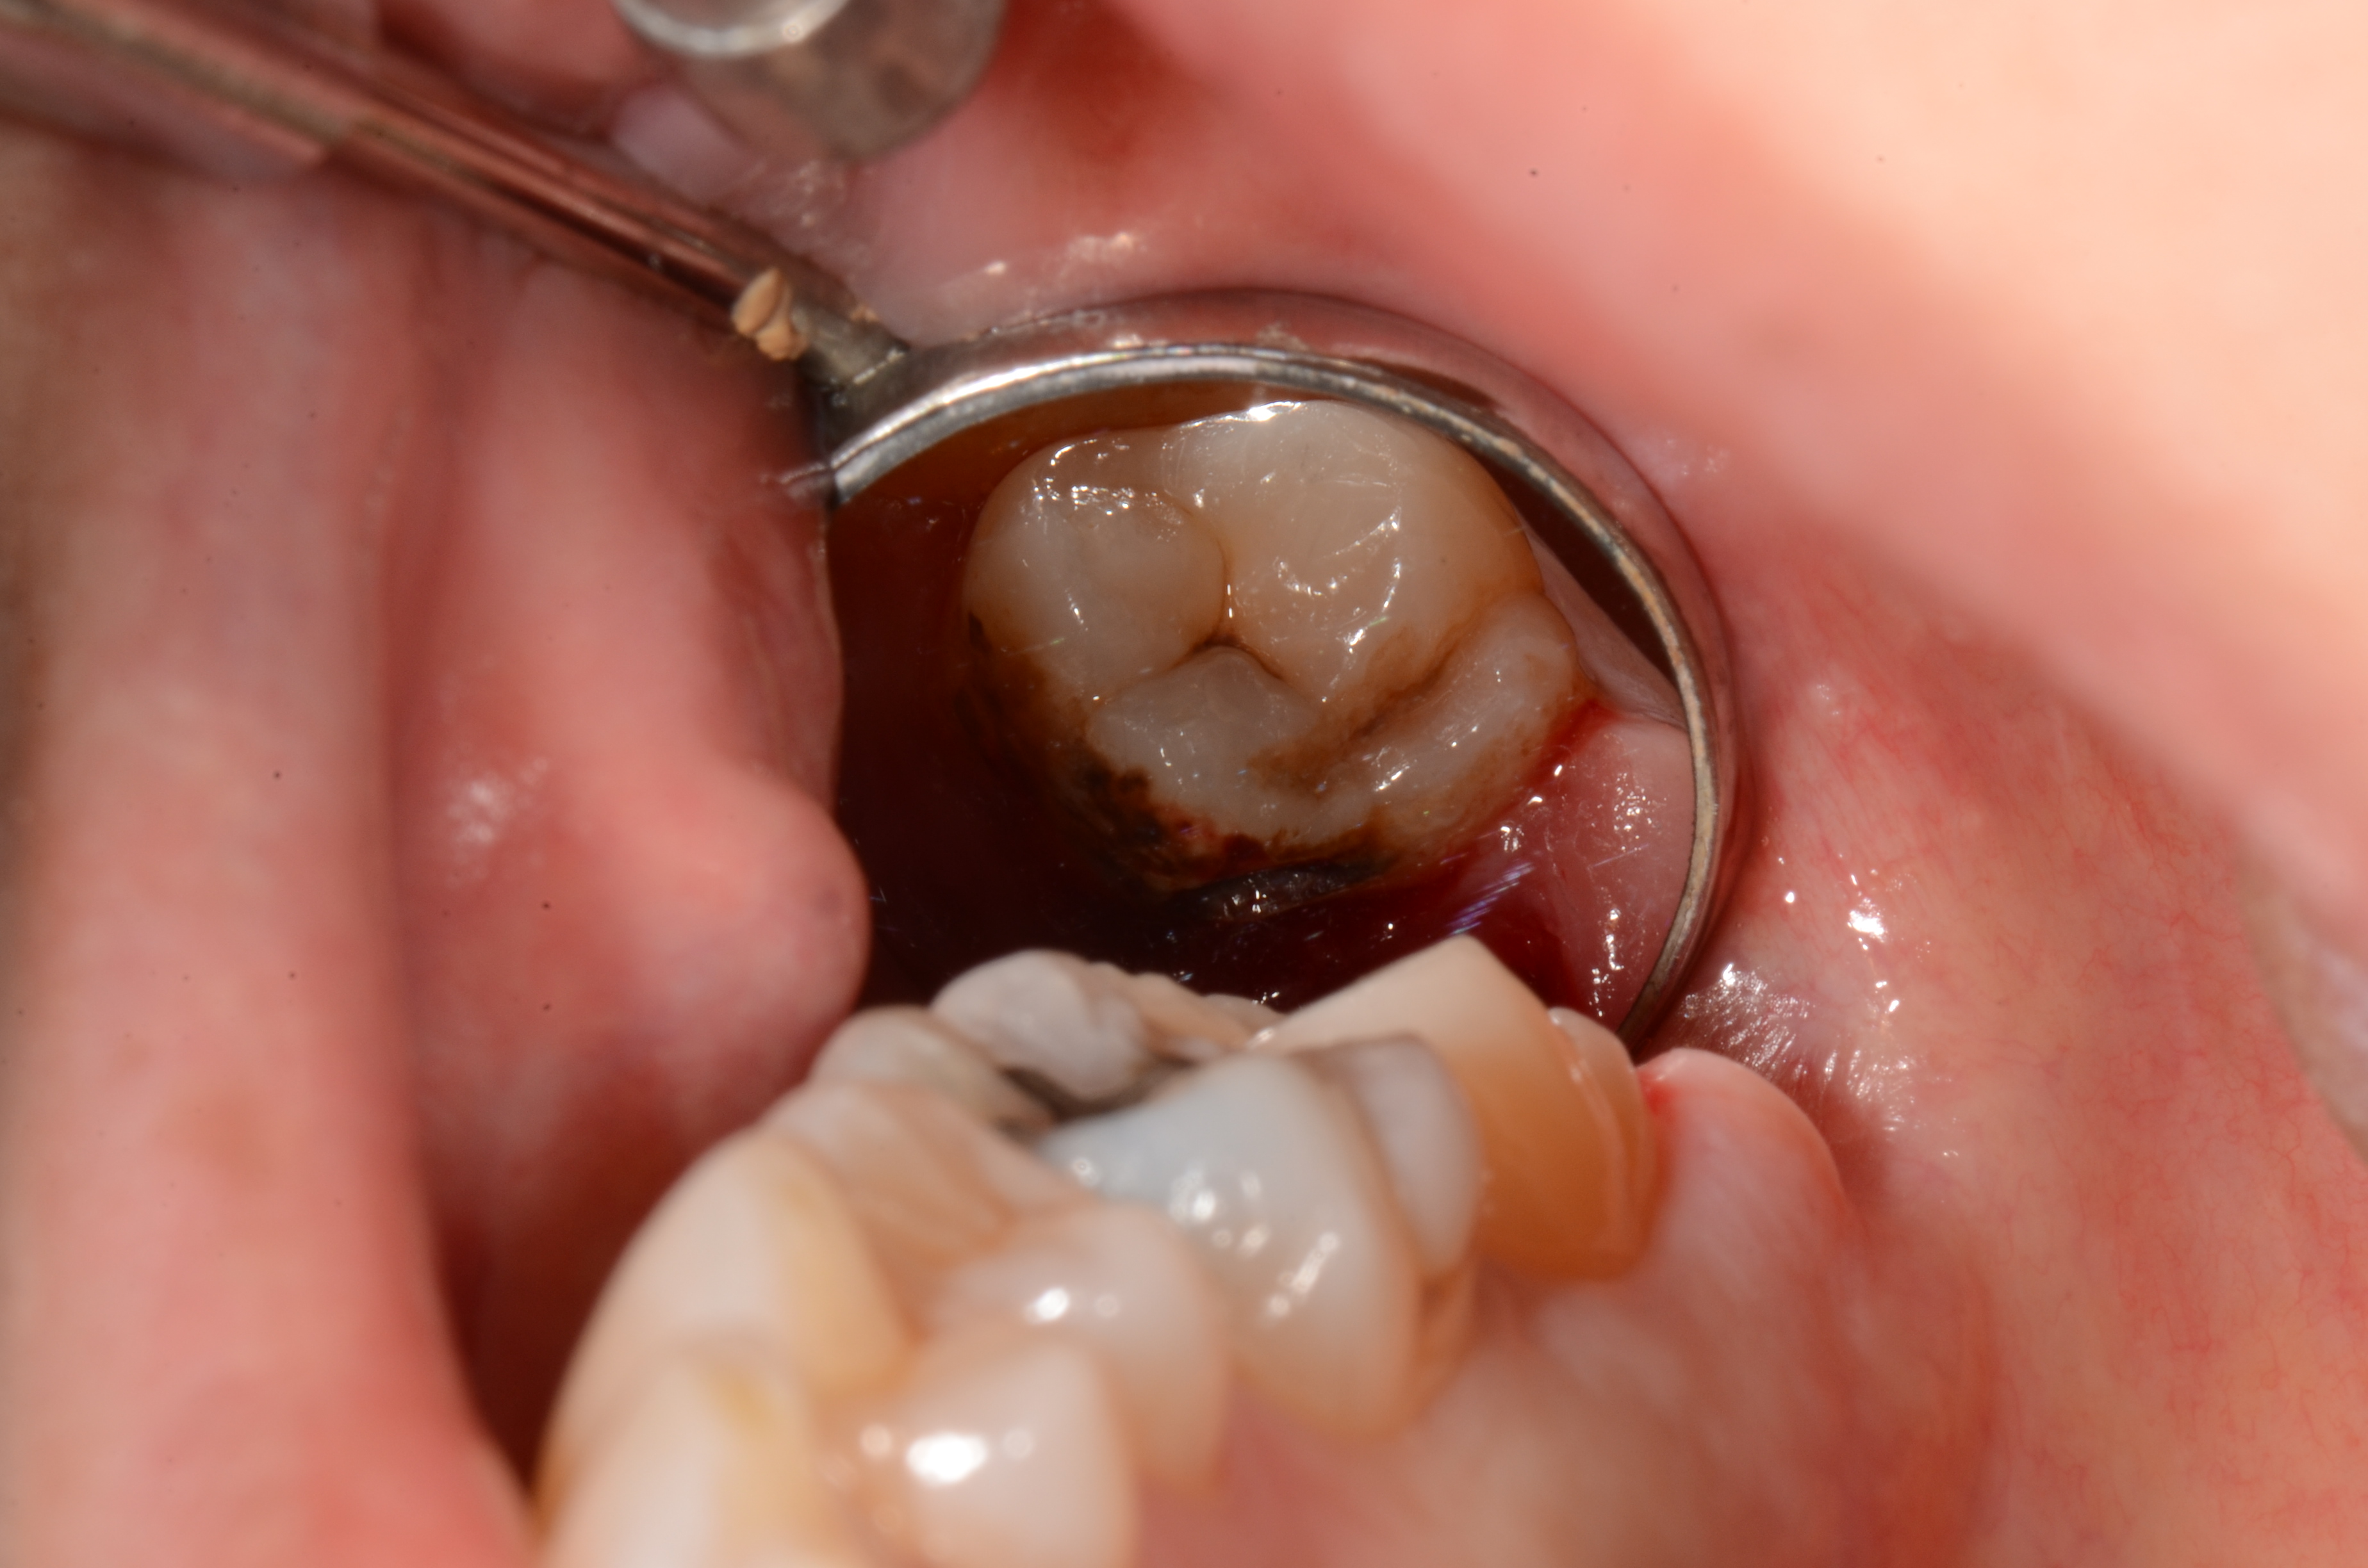 虫歯 の 治療